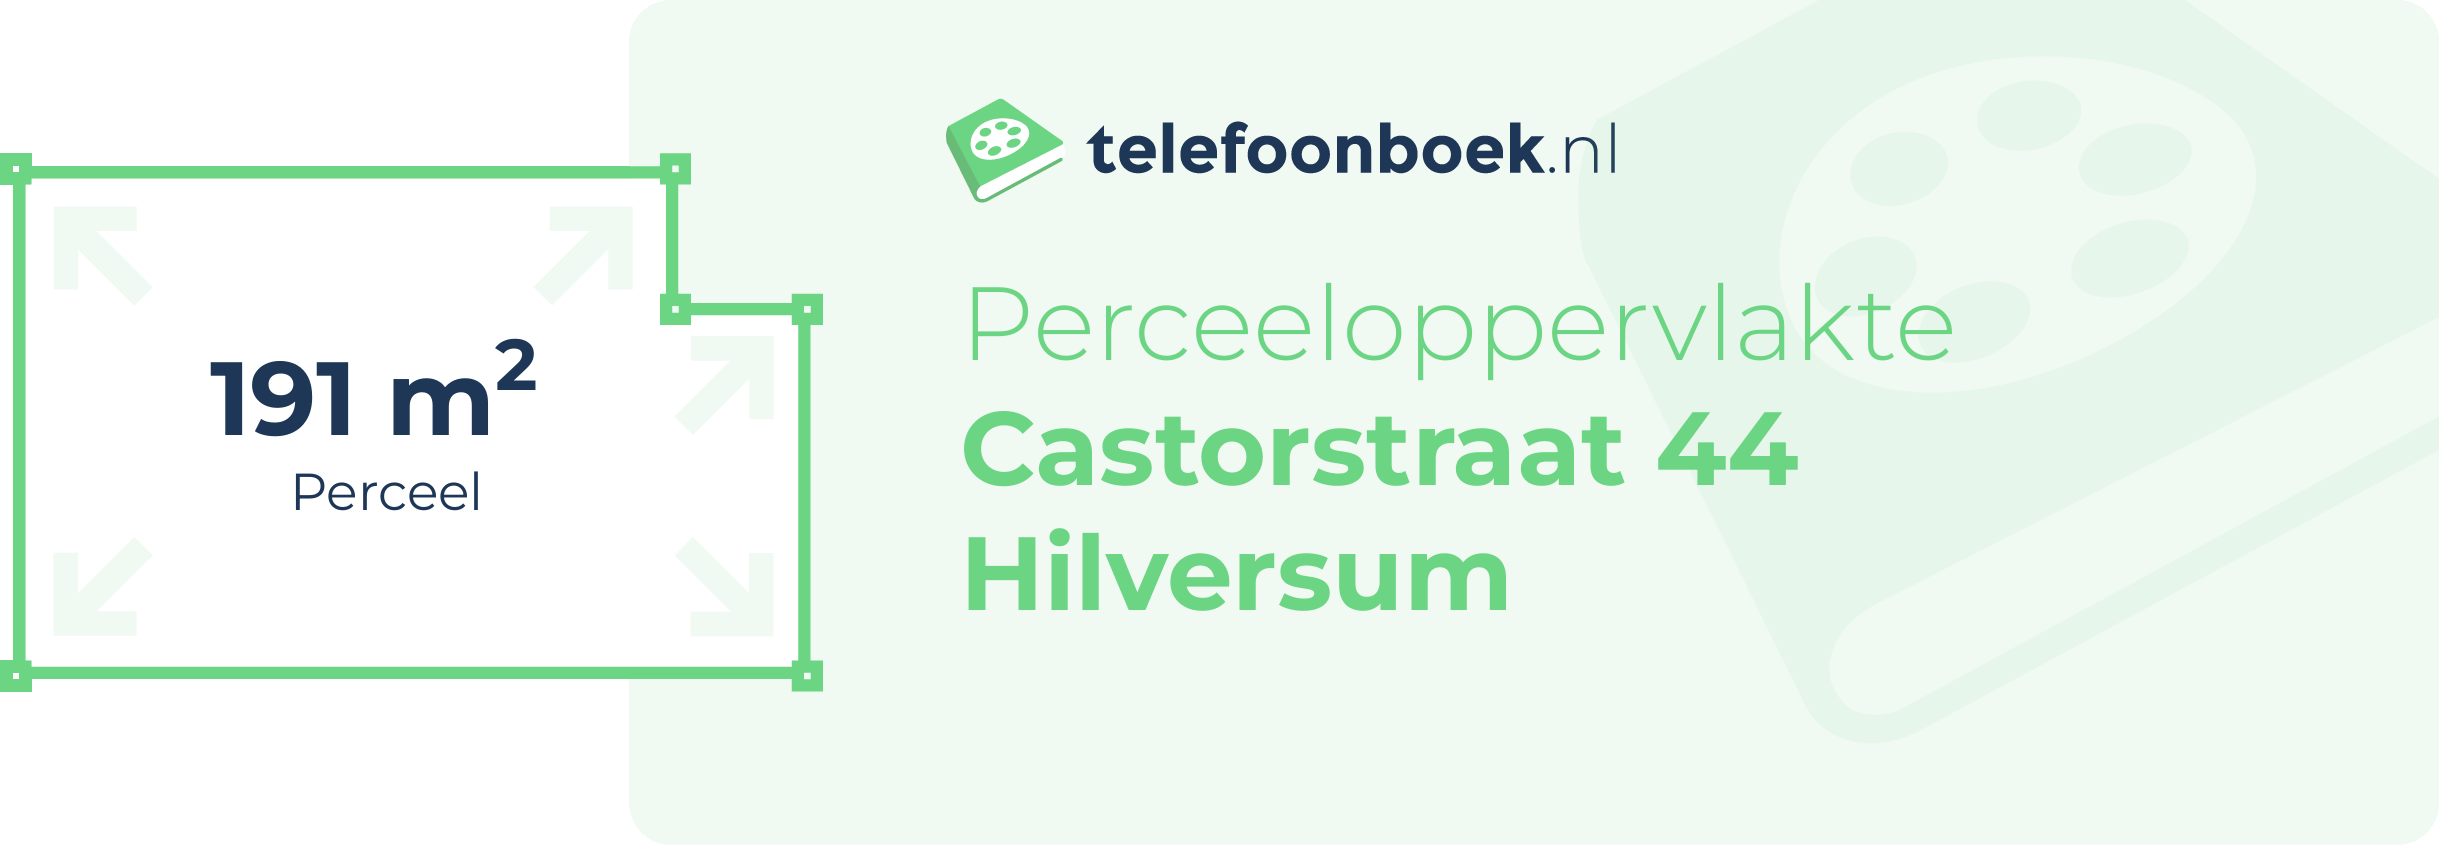 Perceeloppervlakte Castorstraat 44 Hilversum